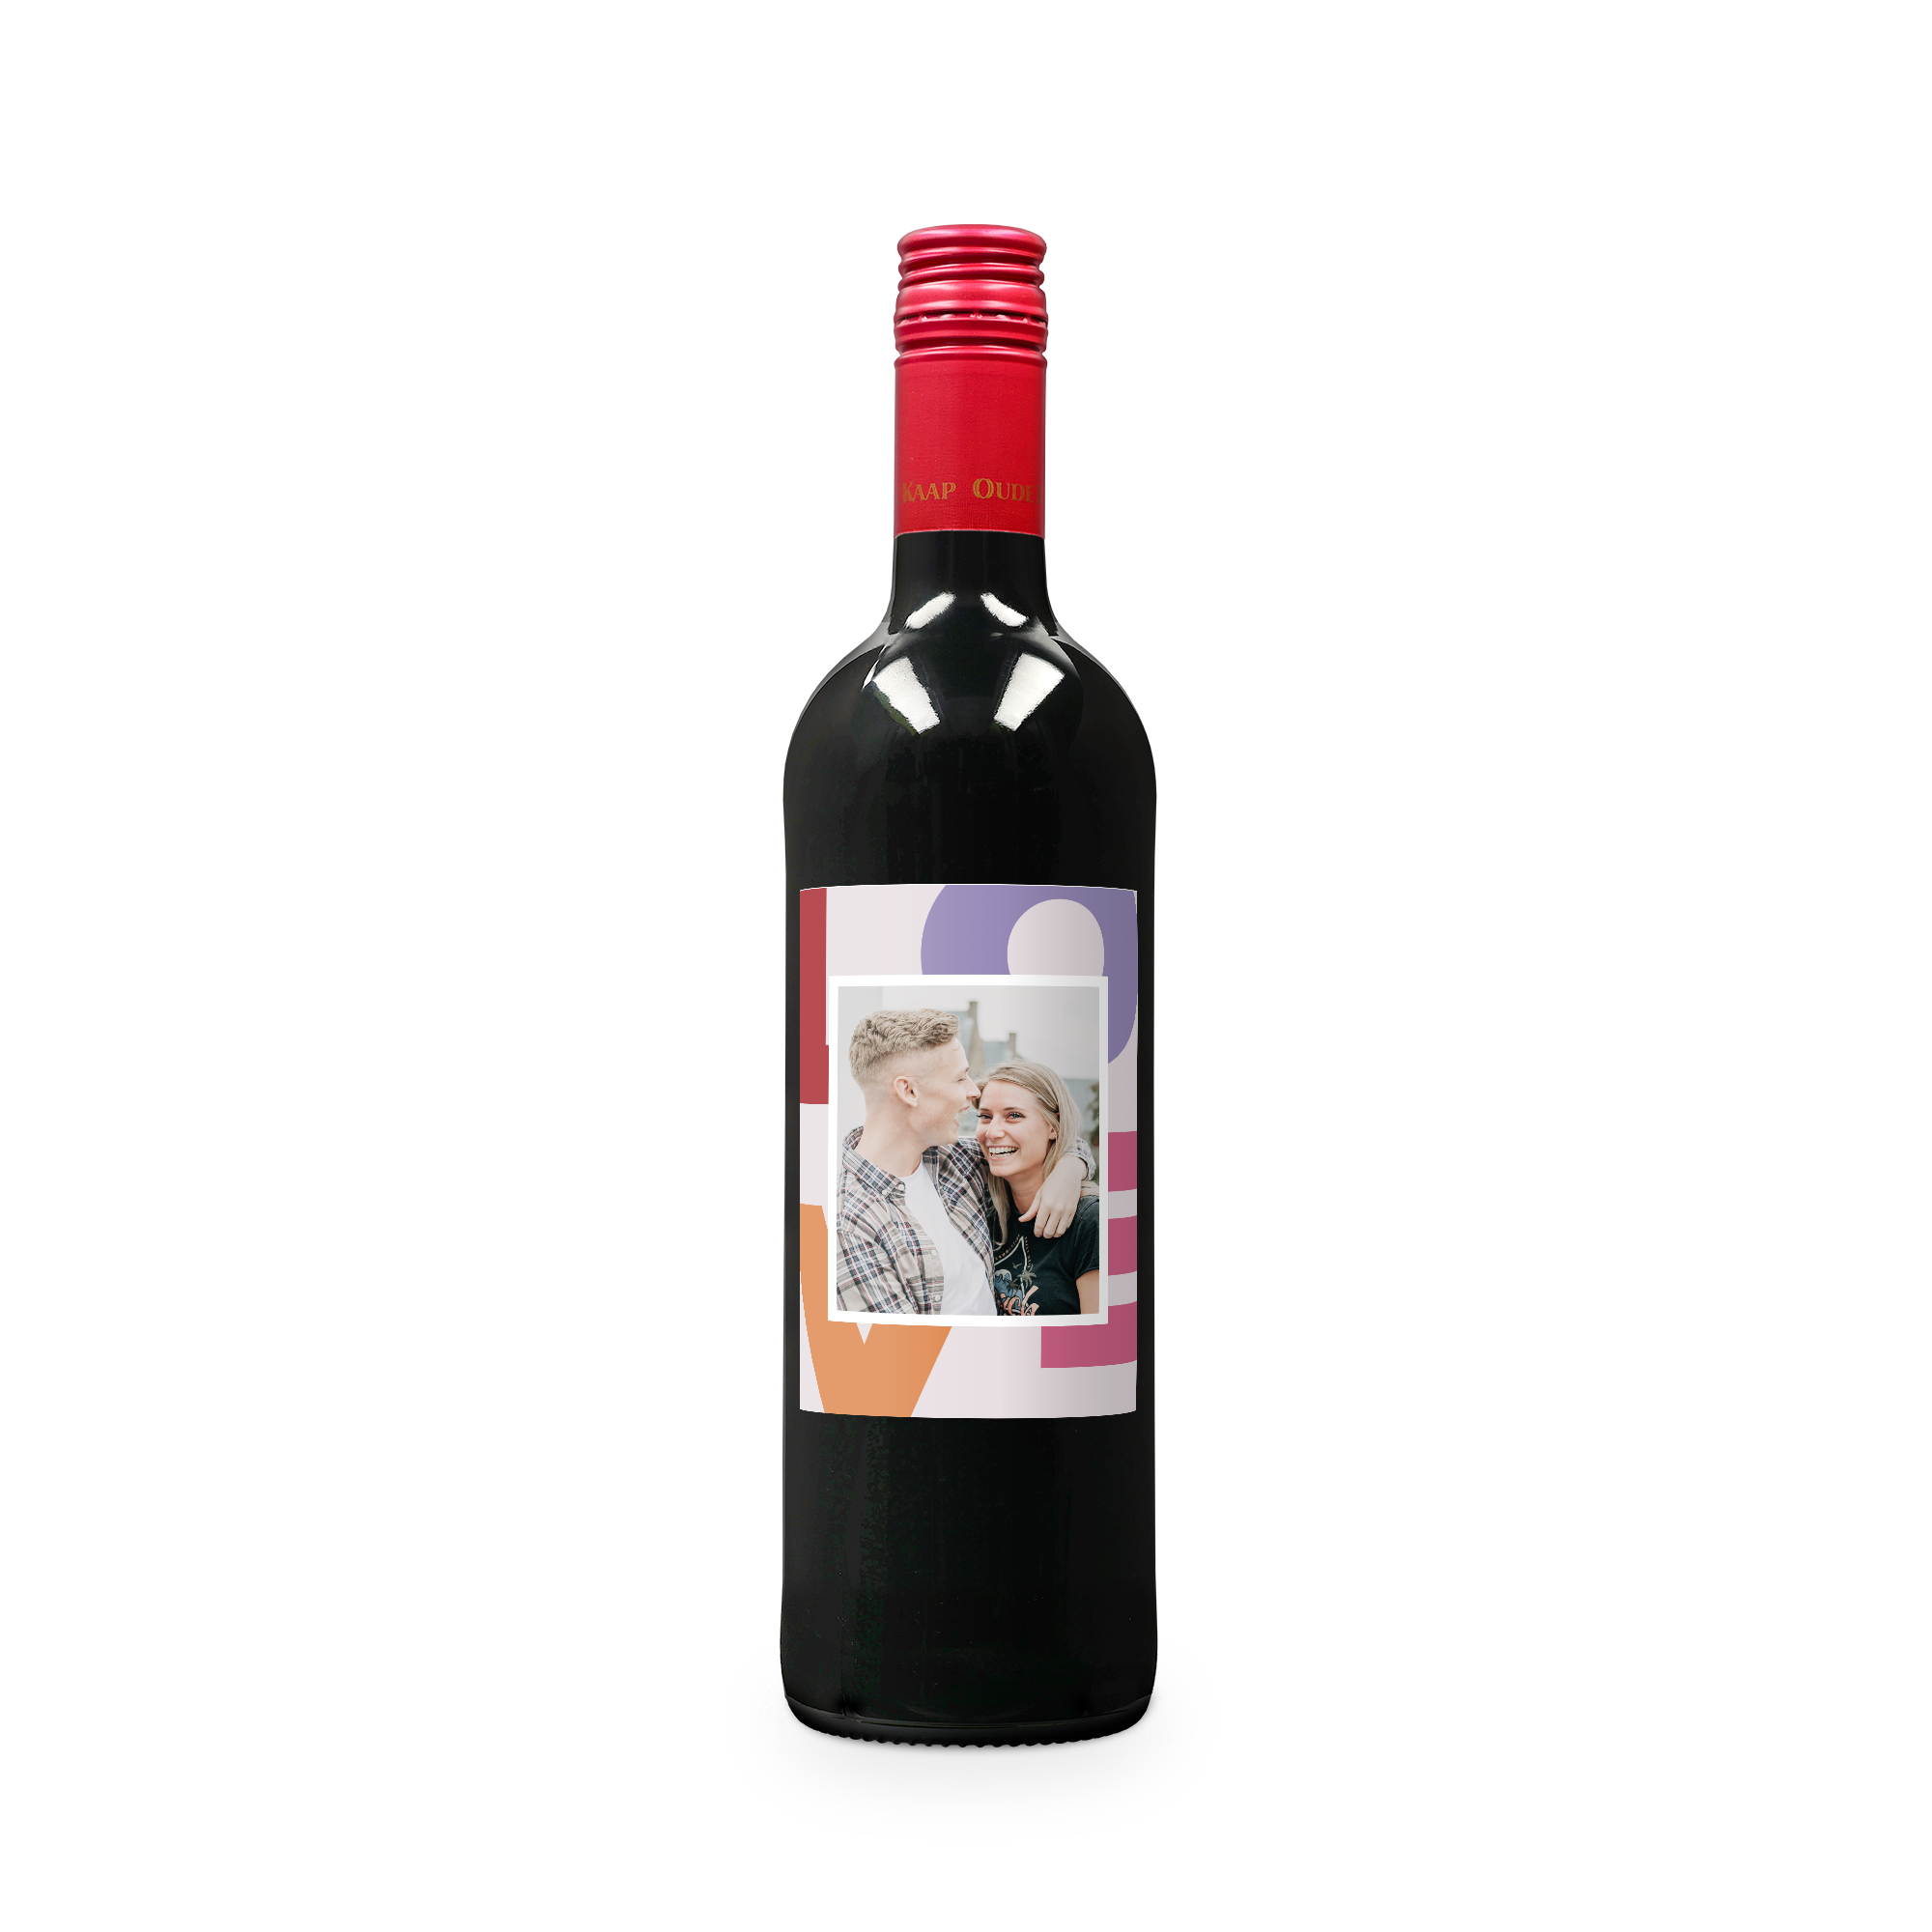 Rødvin med personlig etikette - Oude Kaap